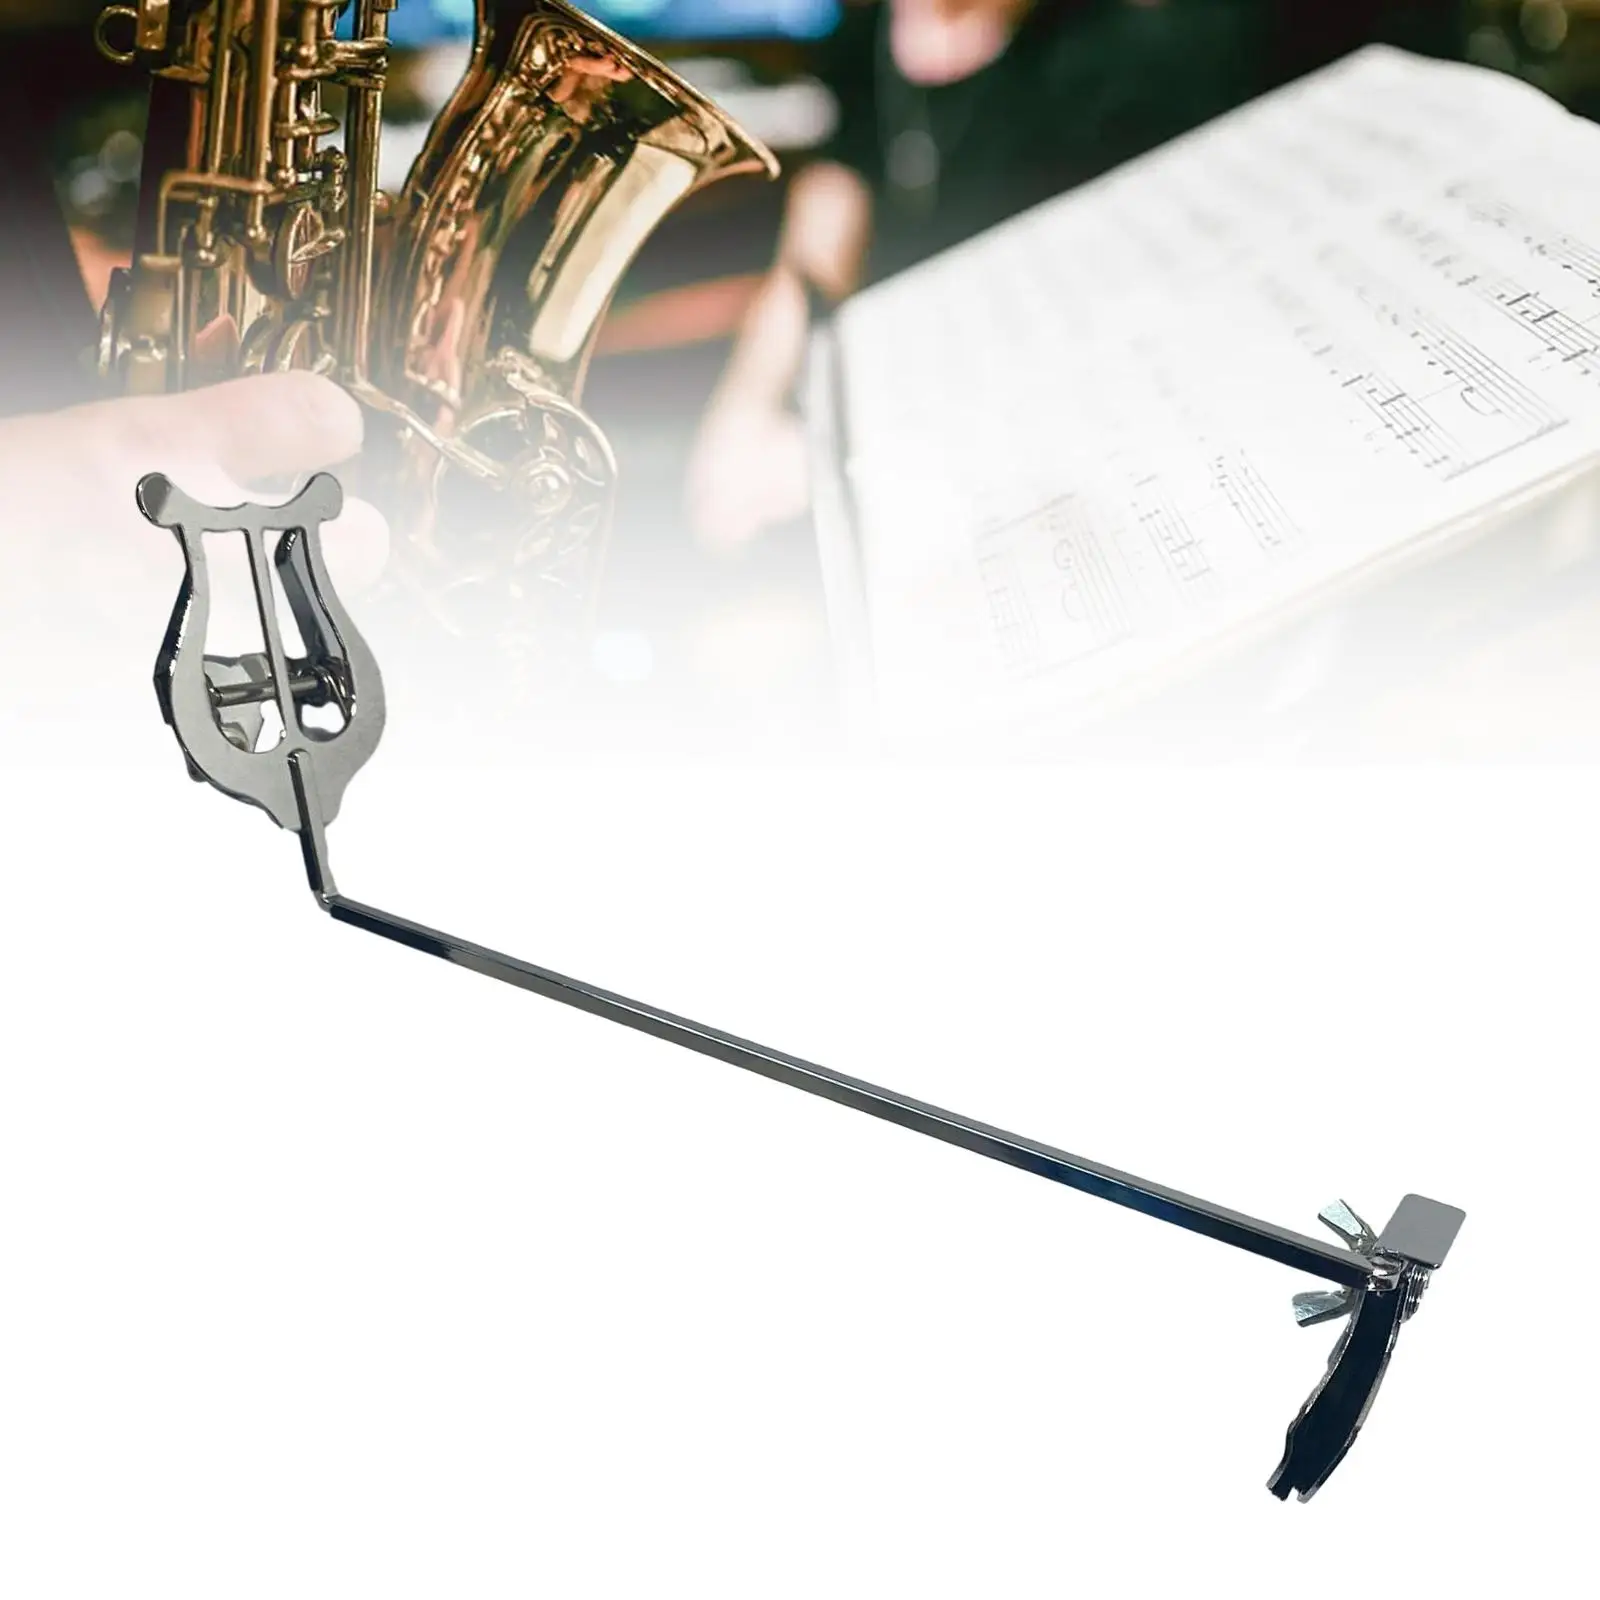 Trombone Flip Folder Keep The Book Open Universal Trumpet Portable Lightweight Professional Instrument Holder Music Sheet Clip